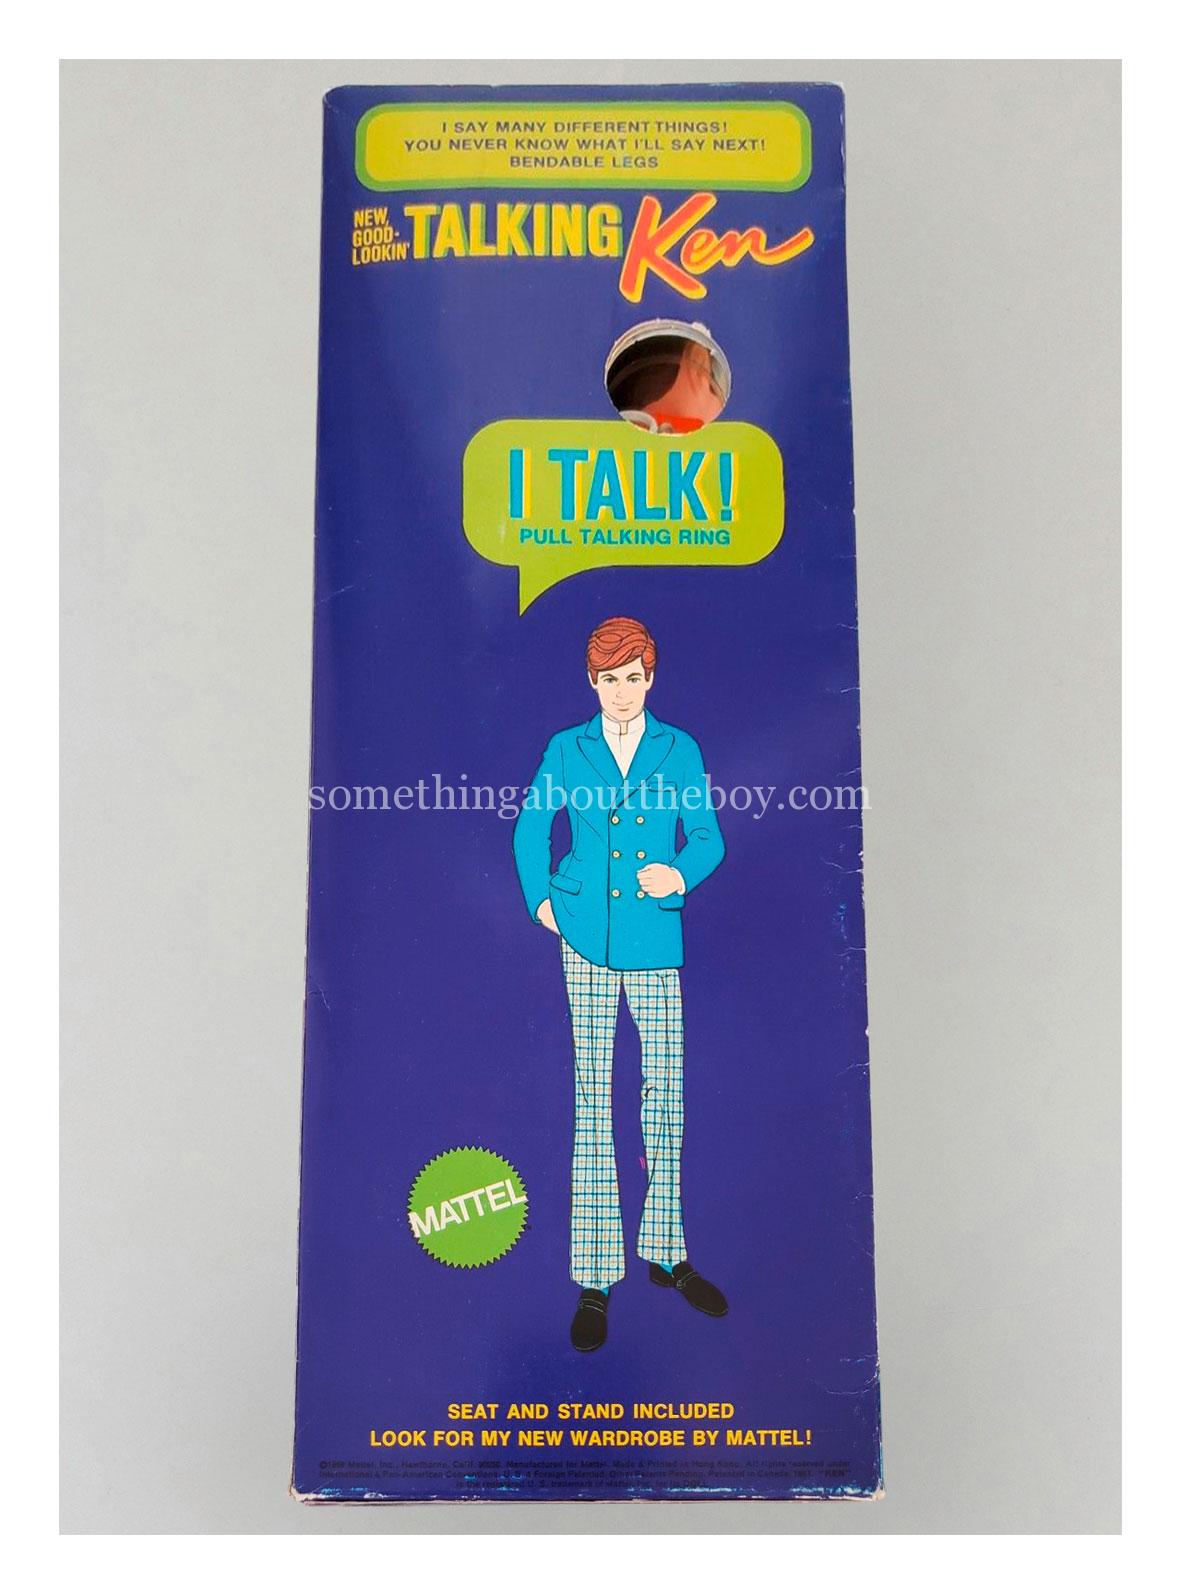 1970-71 #1111 New Good-Lookin' Talking Ken original packaging